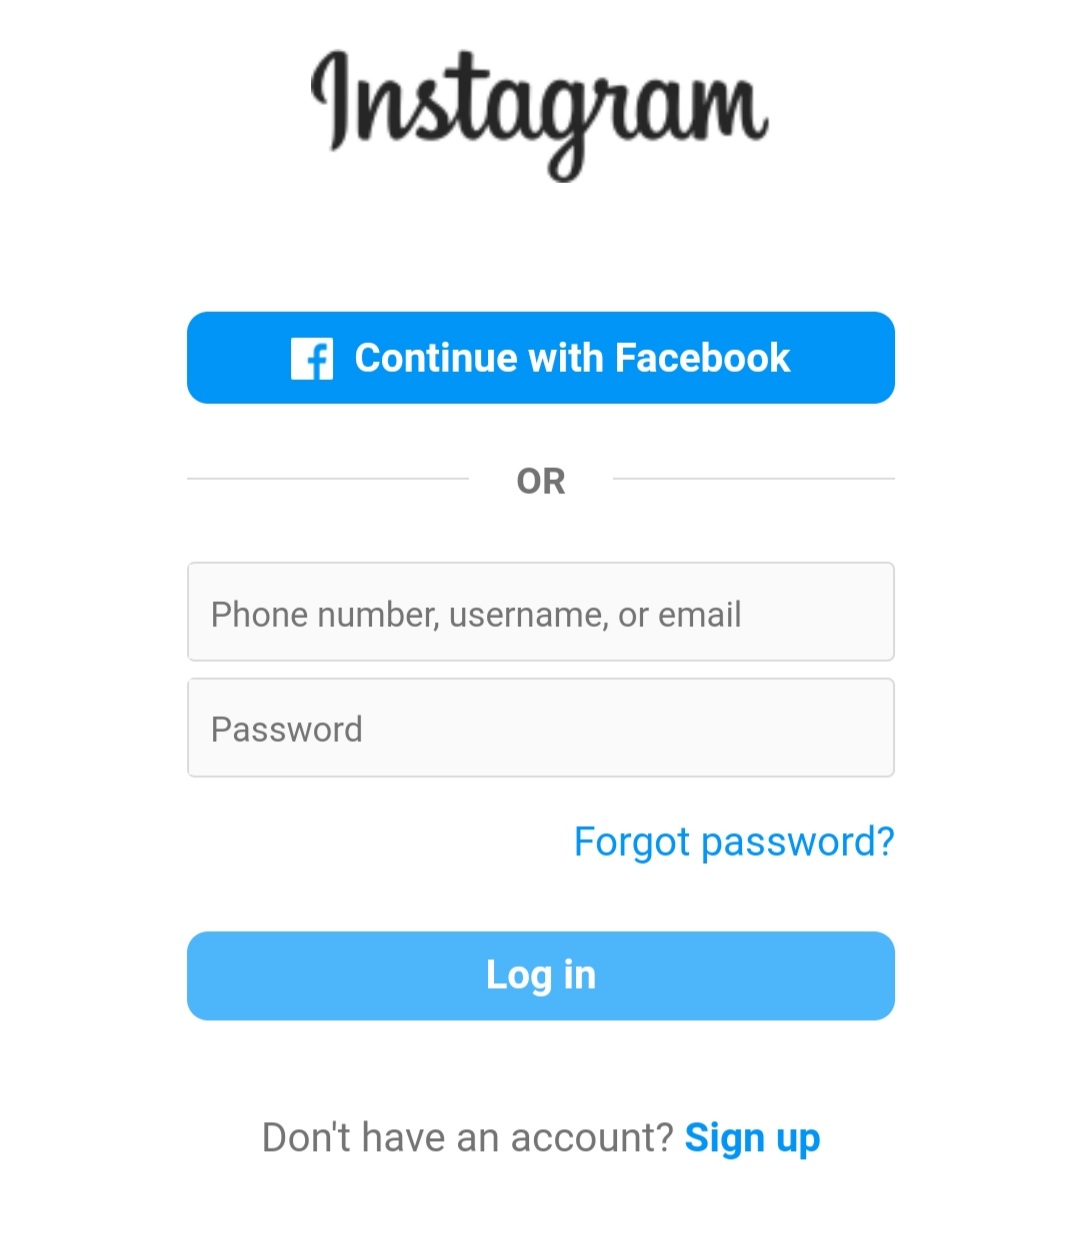 برنامه‌های Instagram story saver 